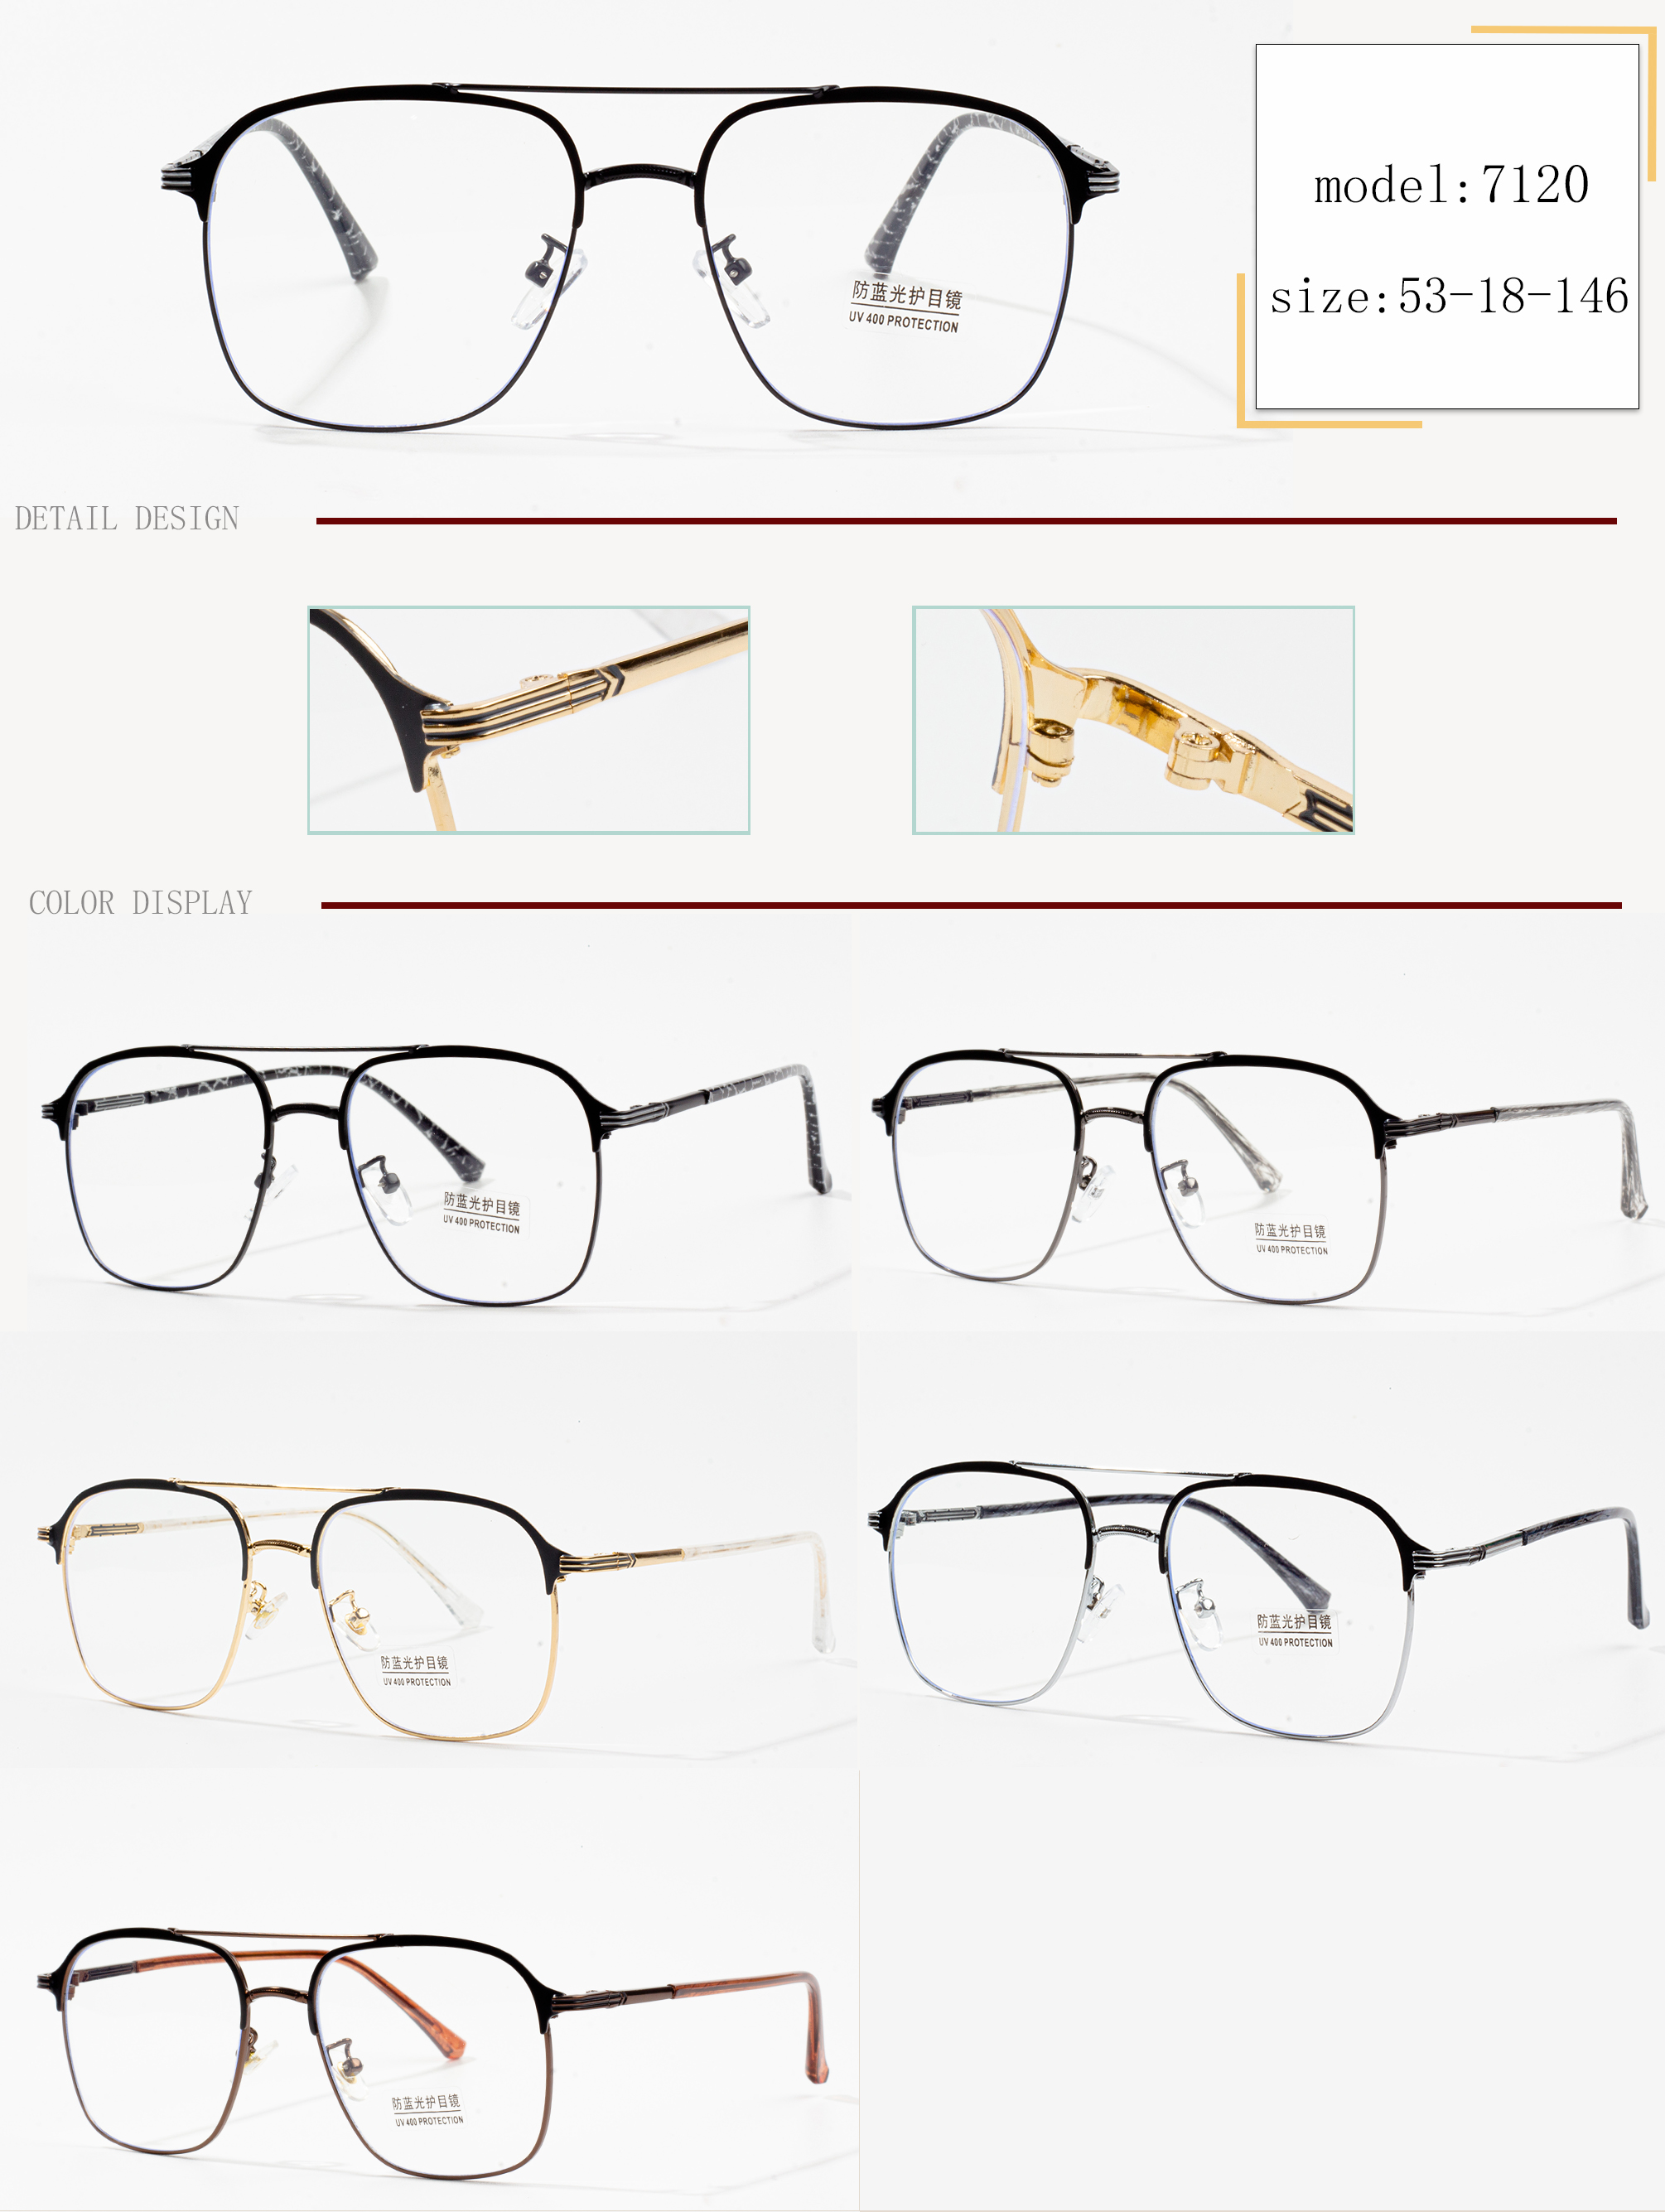 keretes szemüveg